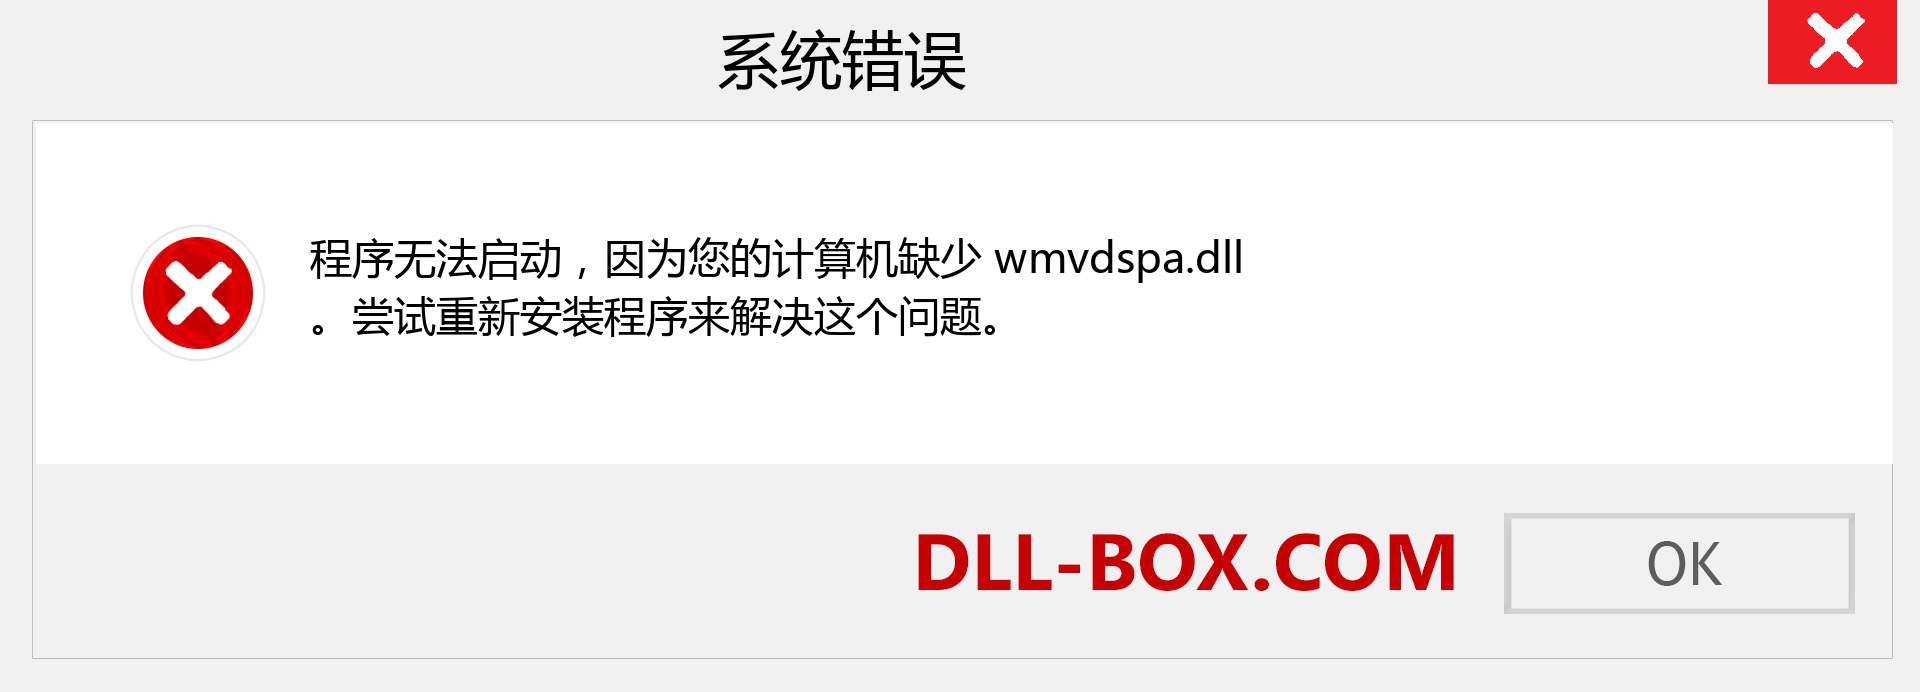 wmvdspa.dll 文件丢失？。 适用于 Windows 7、8、10 的下载 - 修复 Windows、照片、图像上的 wmvdspa dll 丢失错误